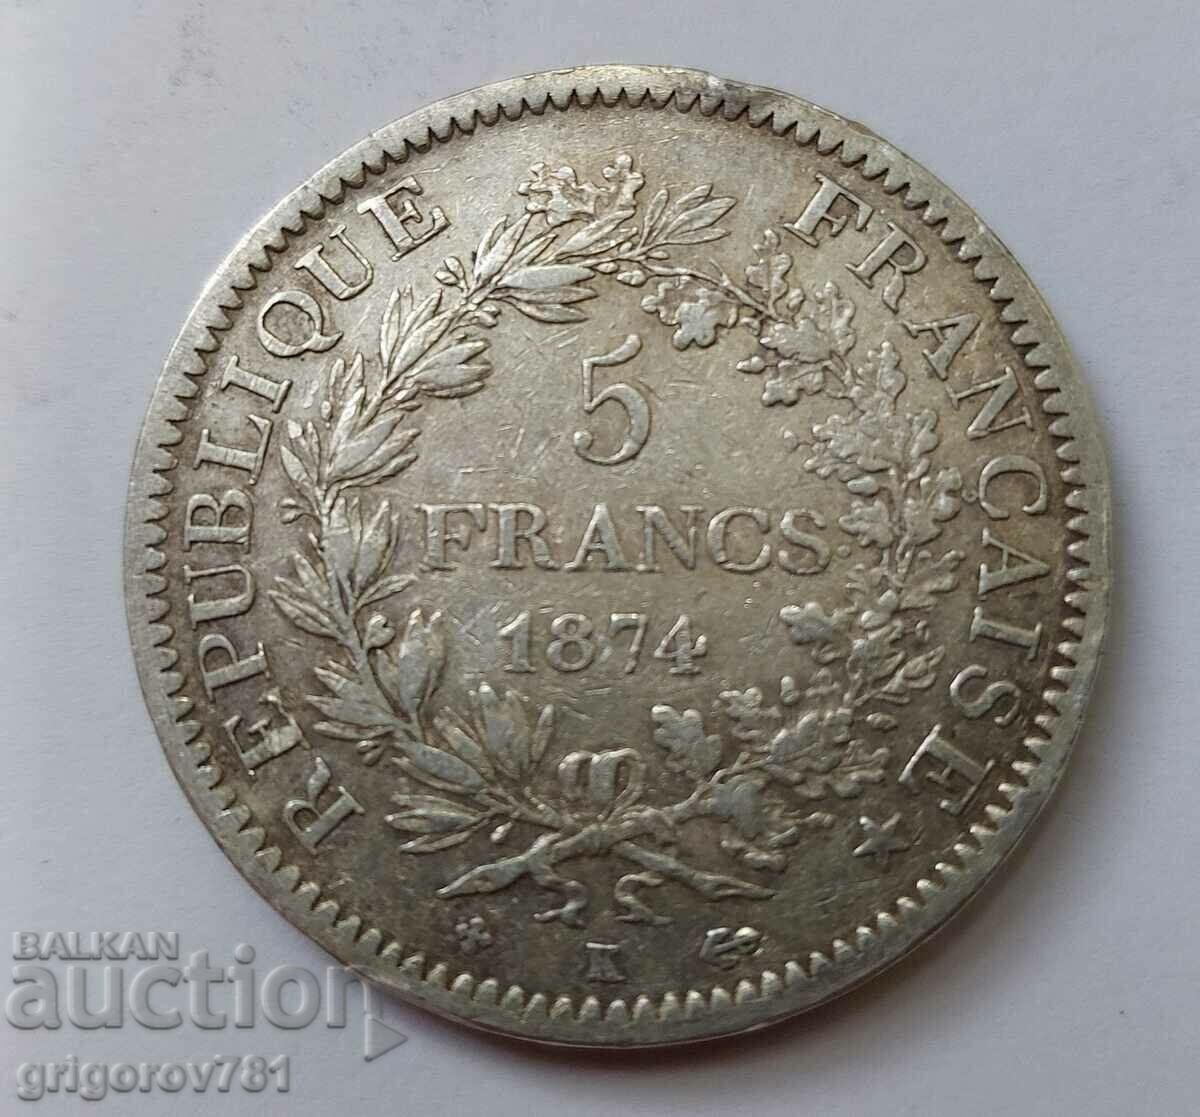 Ασημένιο 5 φράγκα Γαλλία 1874 Κ - ασημένιο νόμισμα # 30